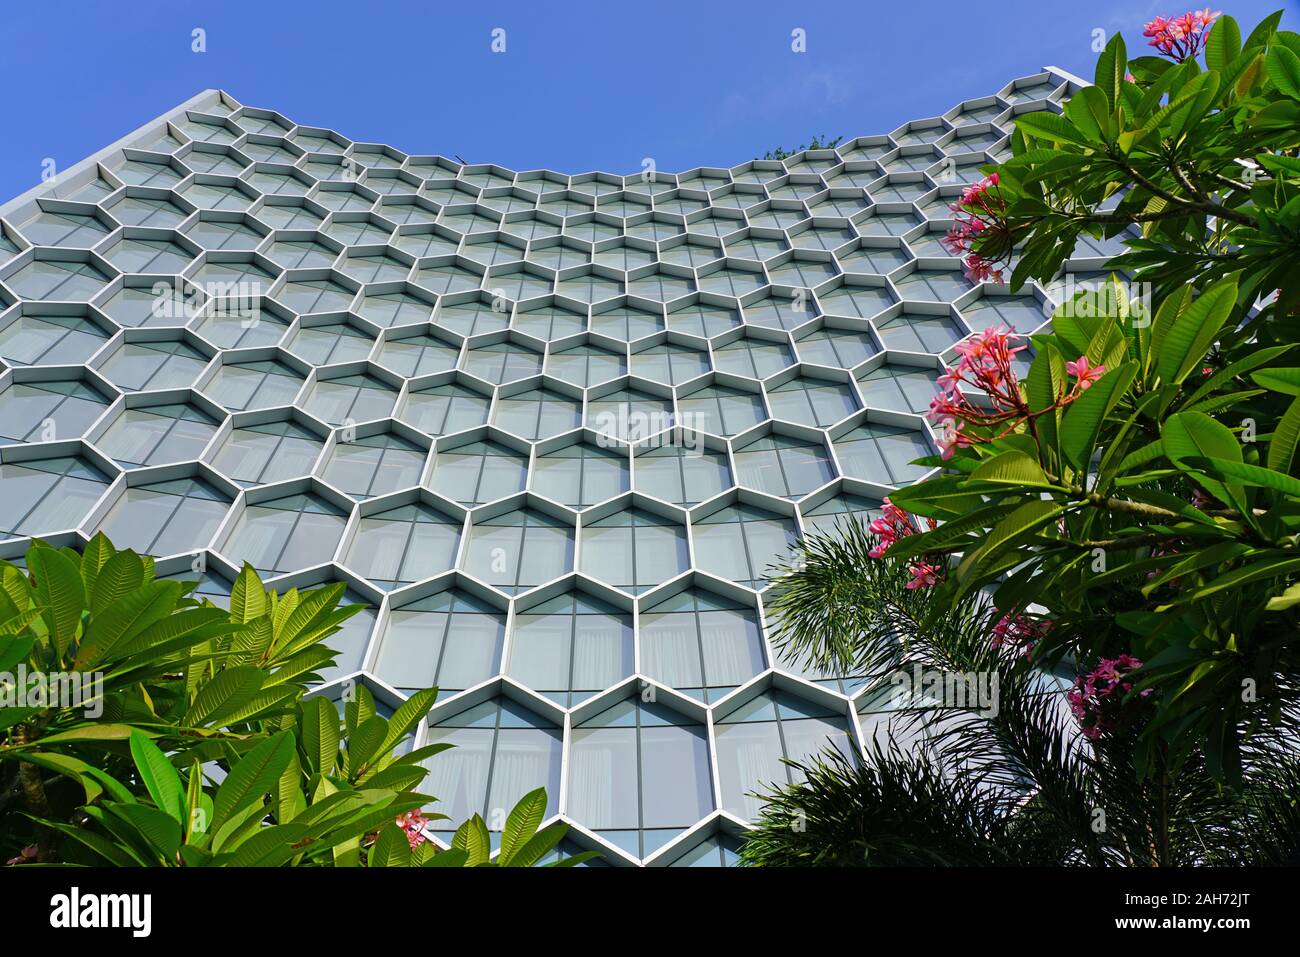 Singapour -4 déc 2019- Vue de l'hôtel Andaz Singapour dans le duo Galleria, un nouveau bâtiment d'habitation dans le quartier de Bugis Bras Basah à Singapour Banque D'Images